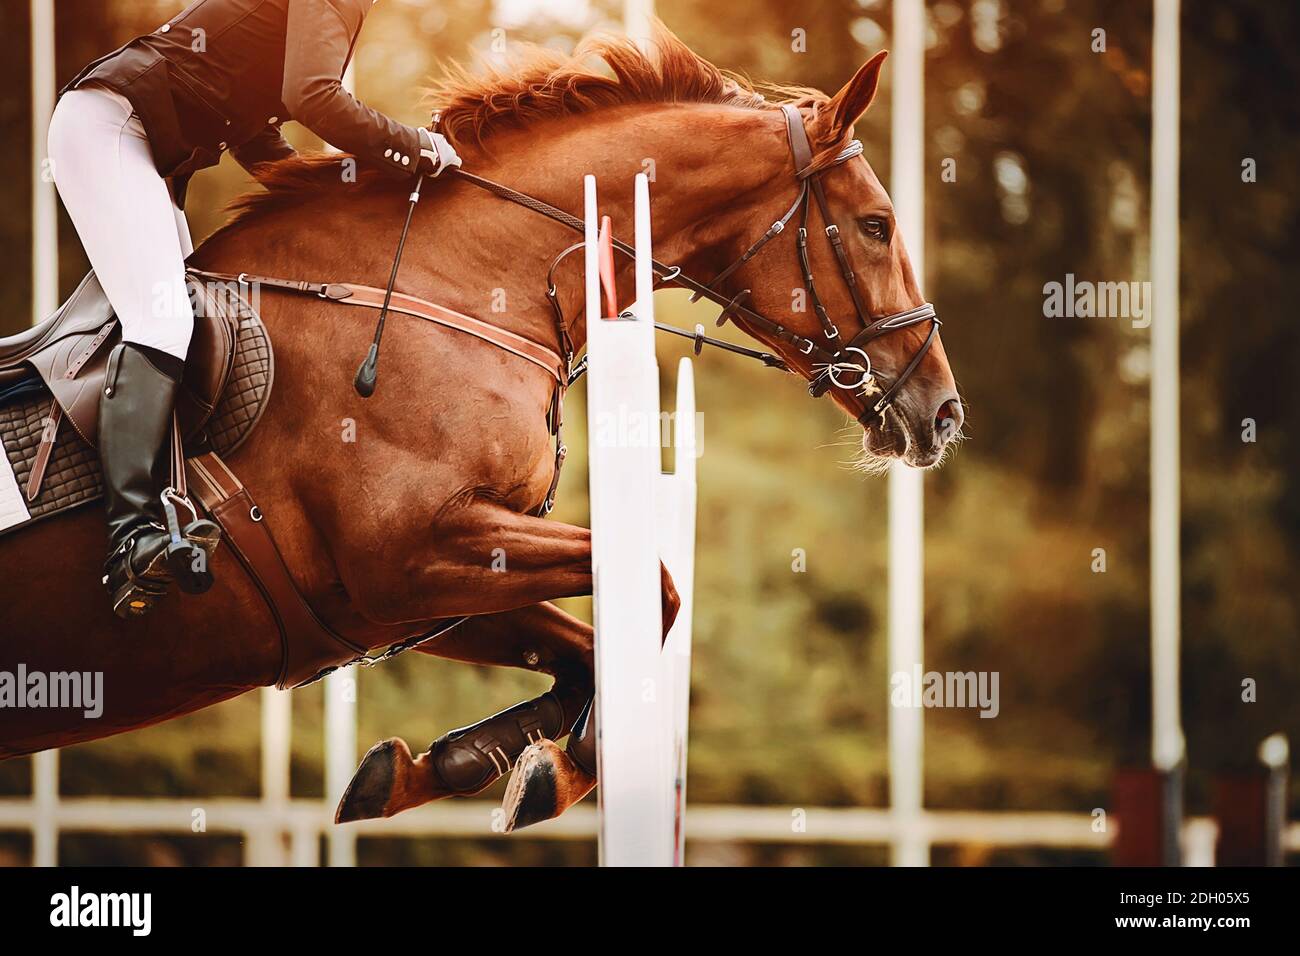 Un forte e veloce Racehorse Bay con un cavaliere in sella salta una barriera alta, illuminato dalla luce del sole. Sport equestre. Equitazione. Foto Stock